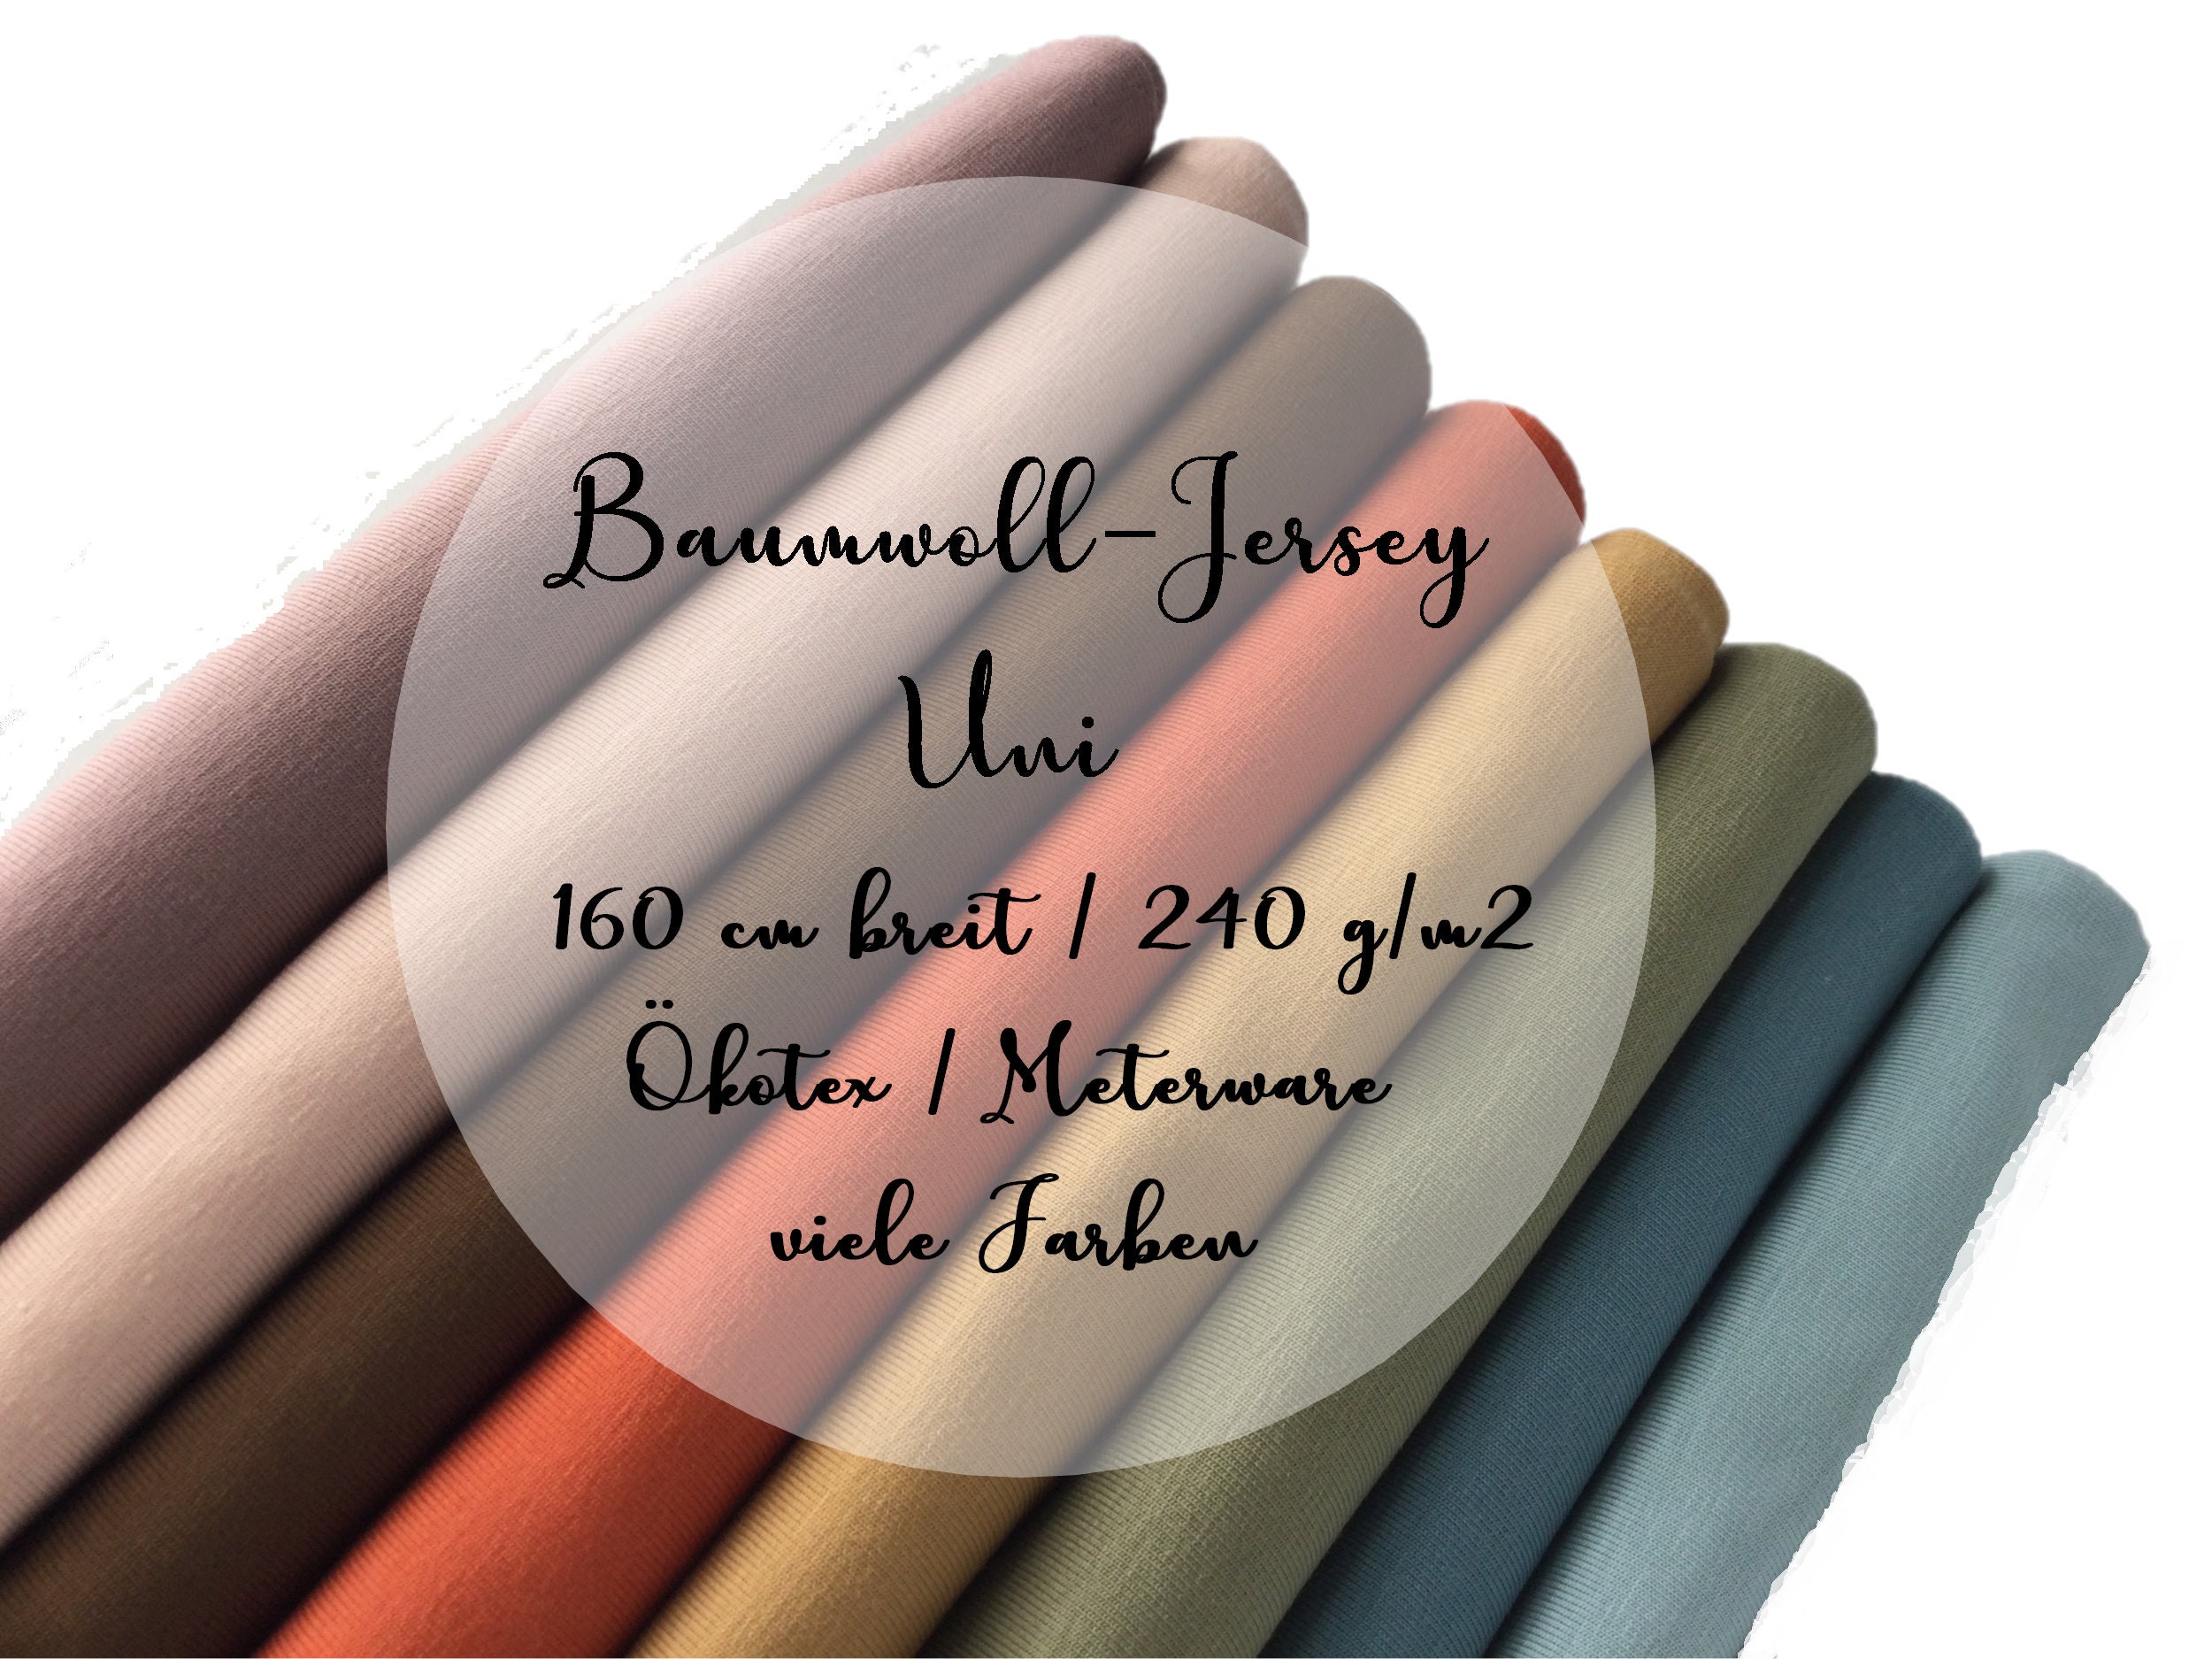 Buy Jersey, Uni Baumwolljersey 240 G/m2 160 Cm Breit Viele Farben Ökotex  Online in India - Etsy